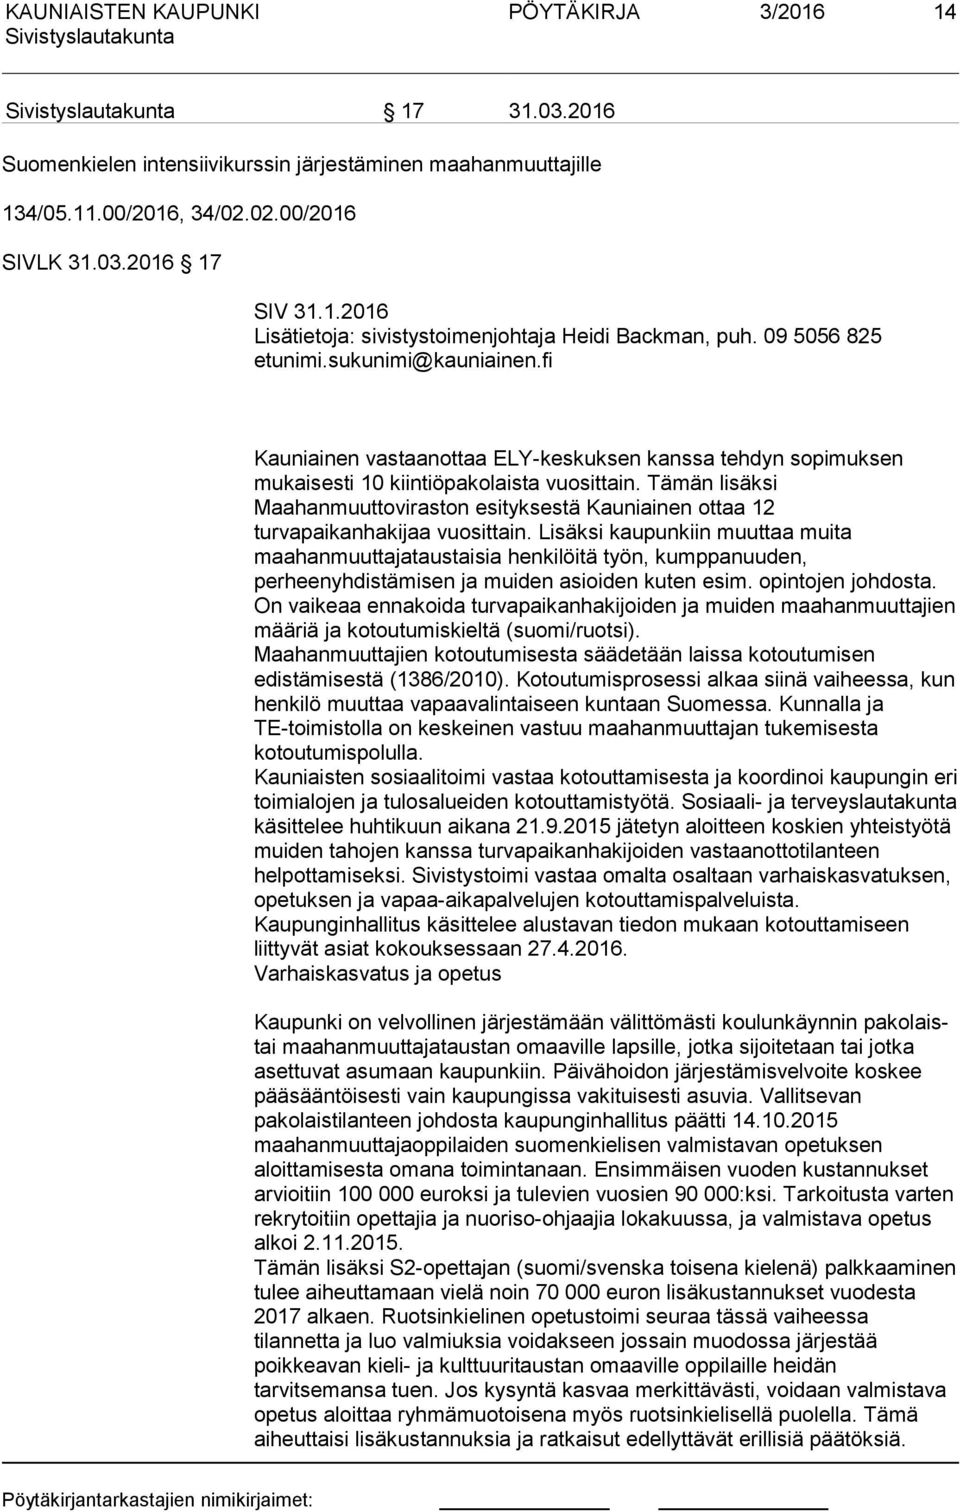 Tämän lisäksi Maahanmuuttoviraston esityksestä Kauniainen ottaa 12 turvapaikanhakijaa vuosittain.